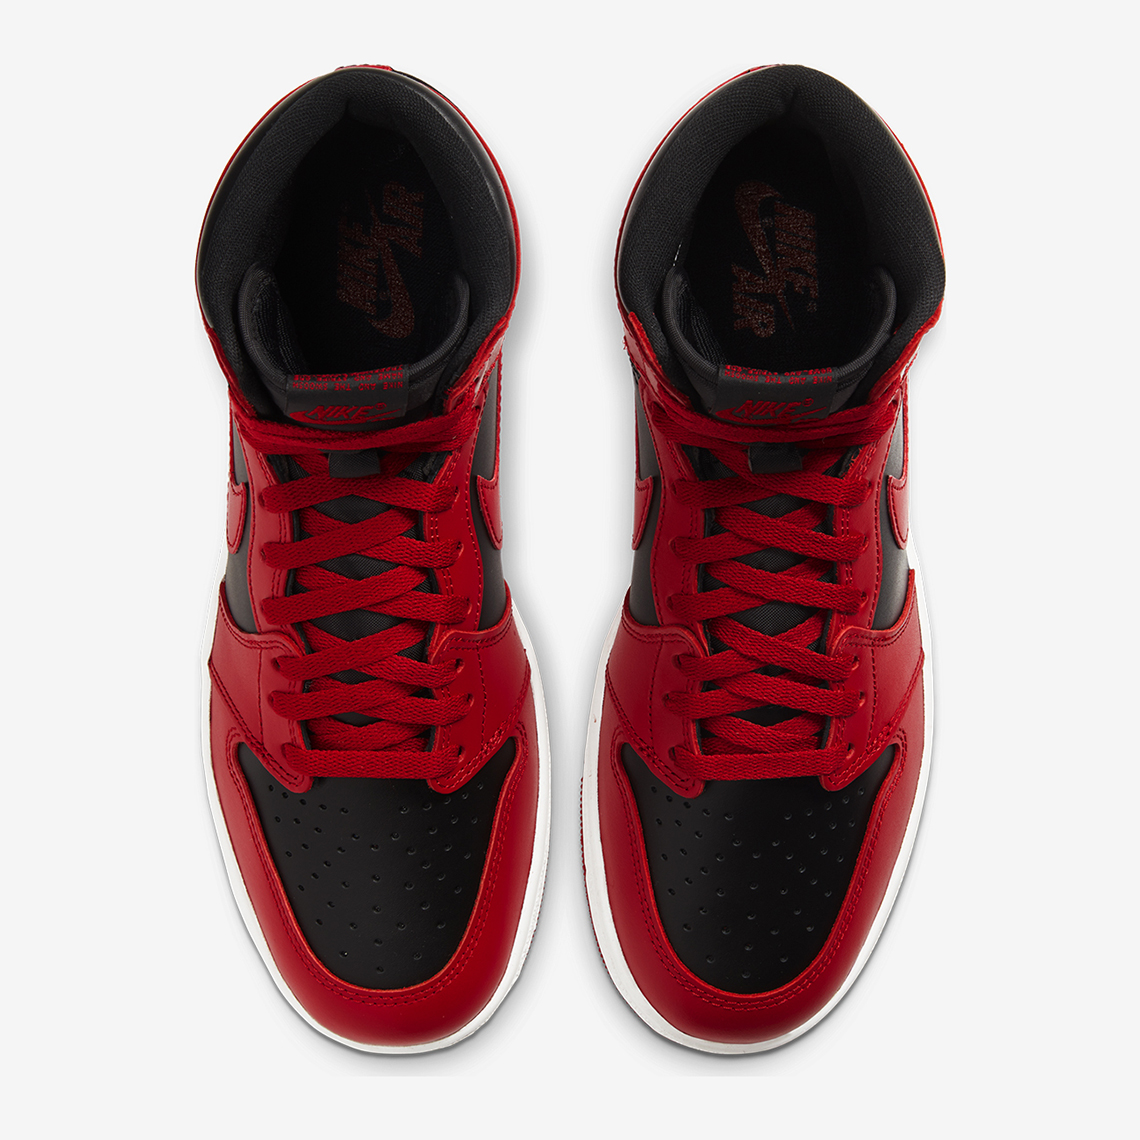 Air Jordan 1 Hi 85 Varsity Red Black - Store List | SneakerNews.com